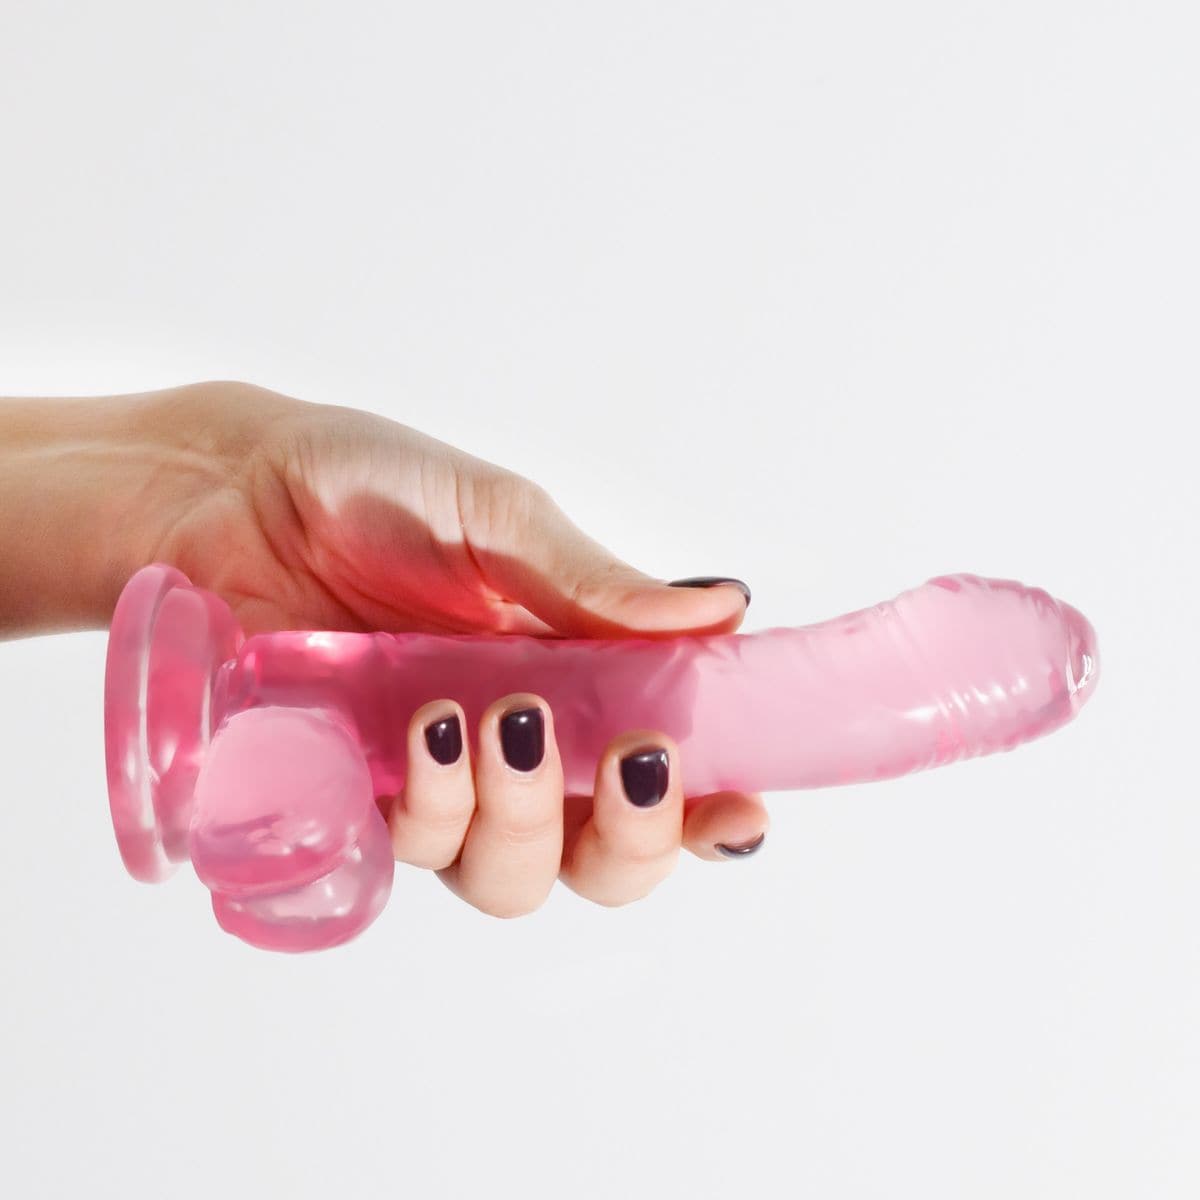 Dildo Hudini Rosa Flexível em Jelly 17,5cm Ø3,5cm - Prazer Realista e Fixação Segura  Crushious   